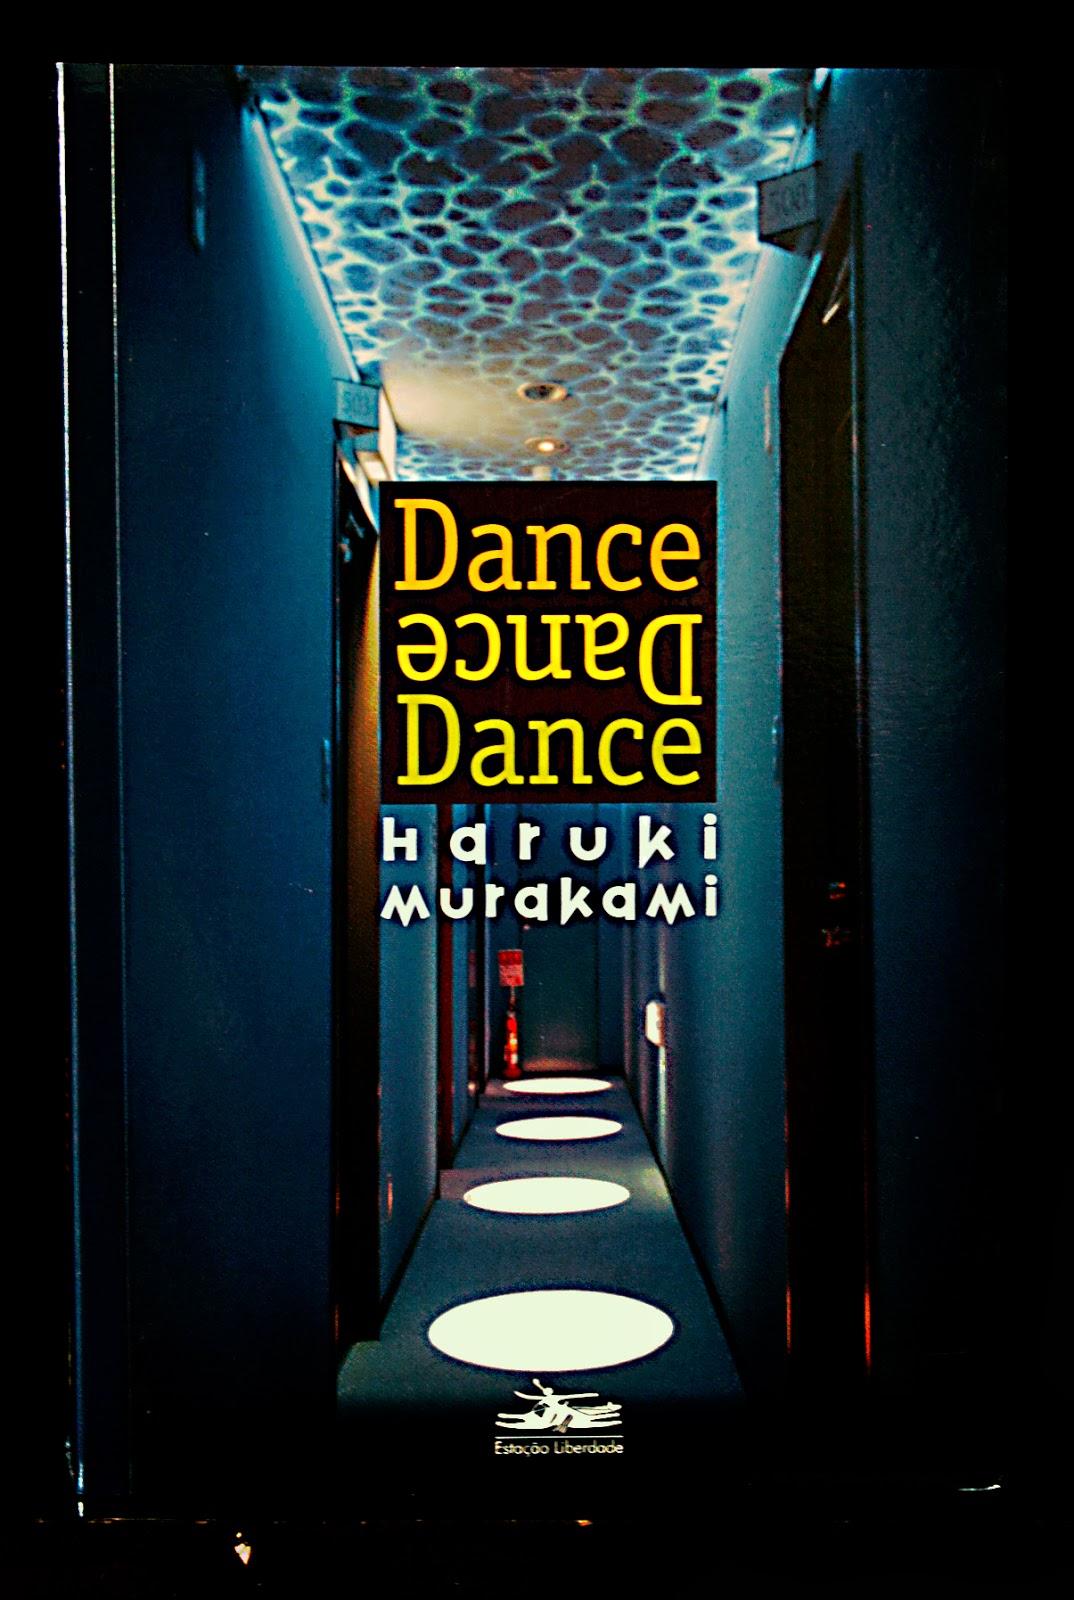 Baila, baila, baila, Haruki Murakami